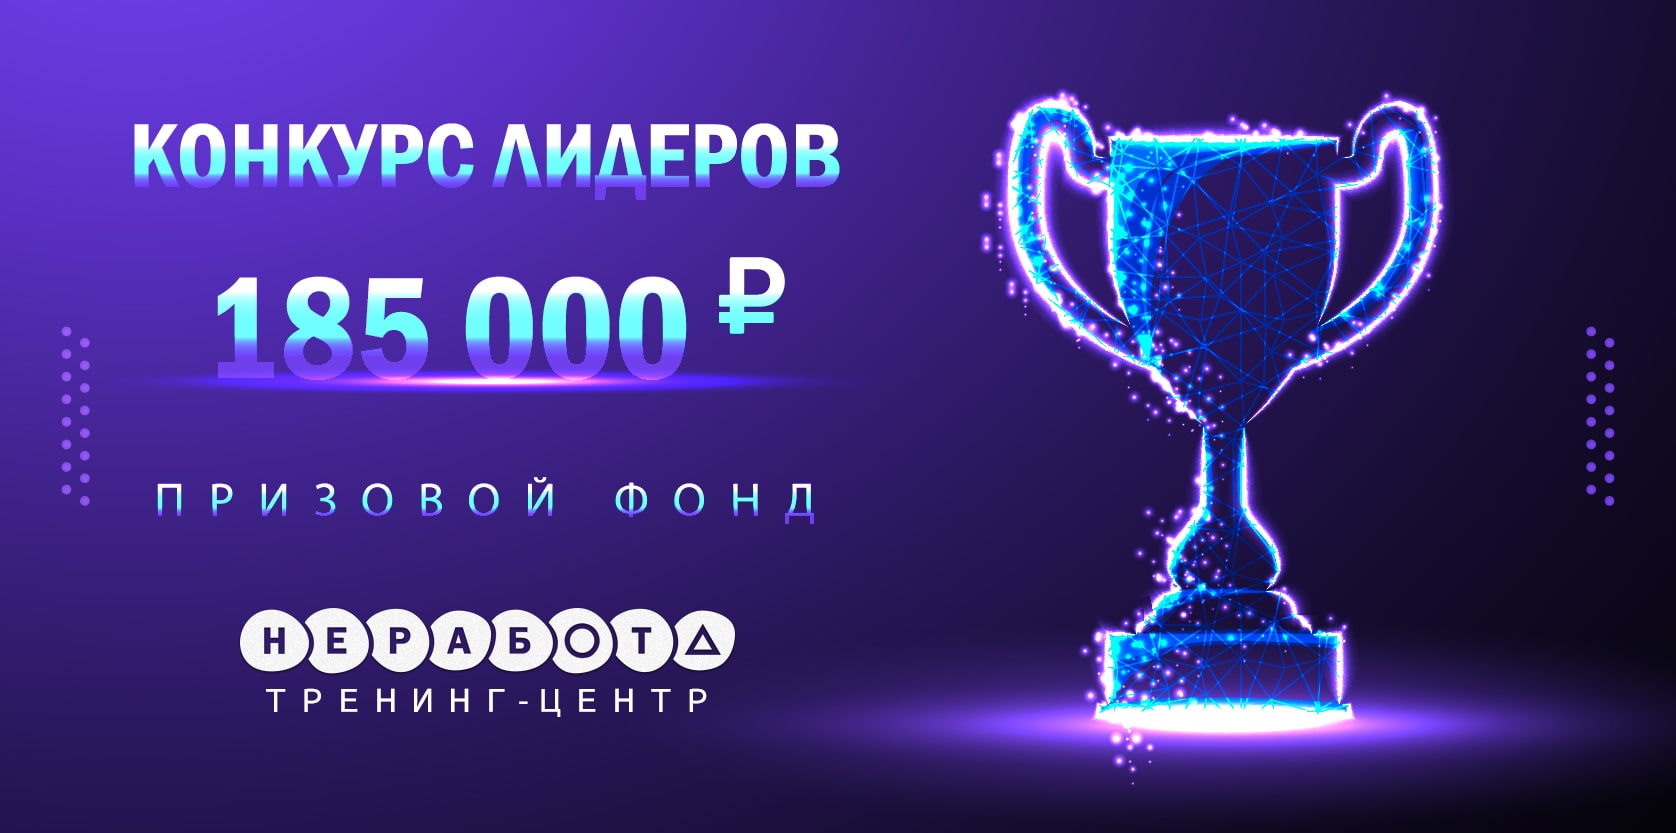 КОНКУРС ЛИДЕРОВ - Призовой фонд 185 000!